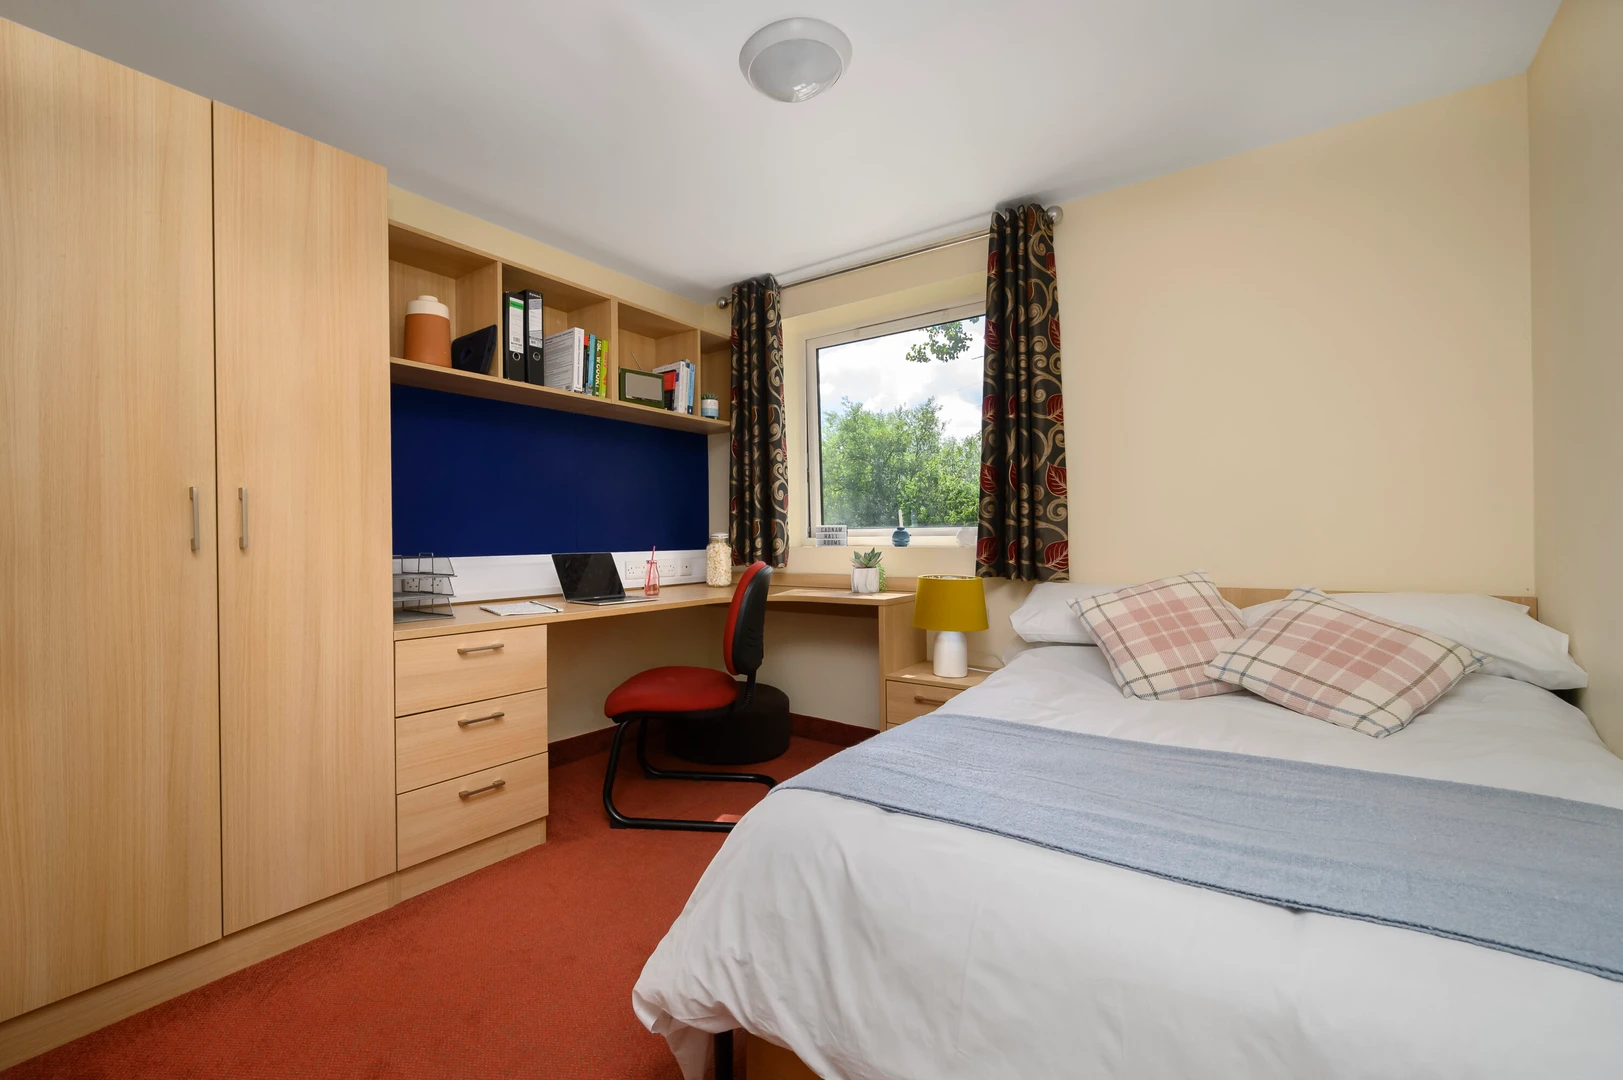 Cheap private room in birmingham